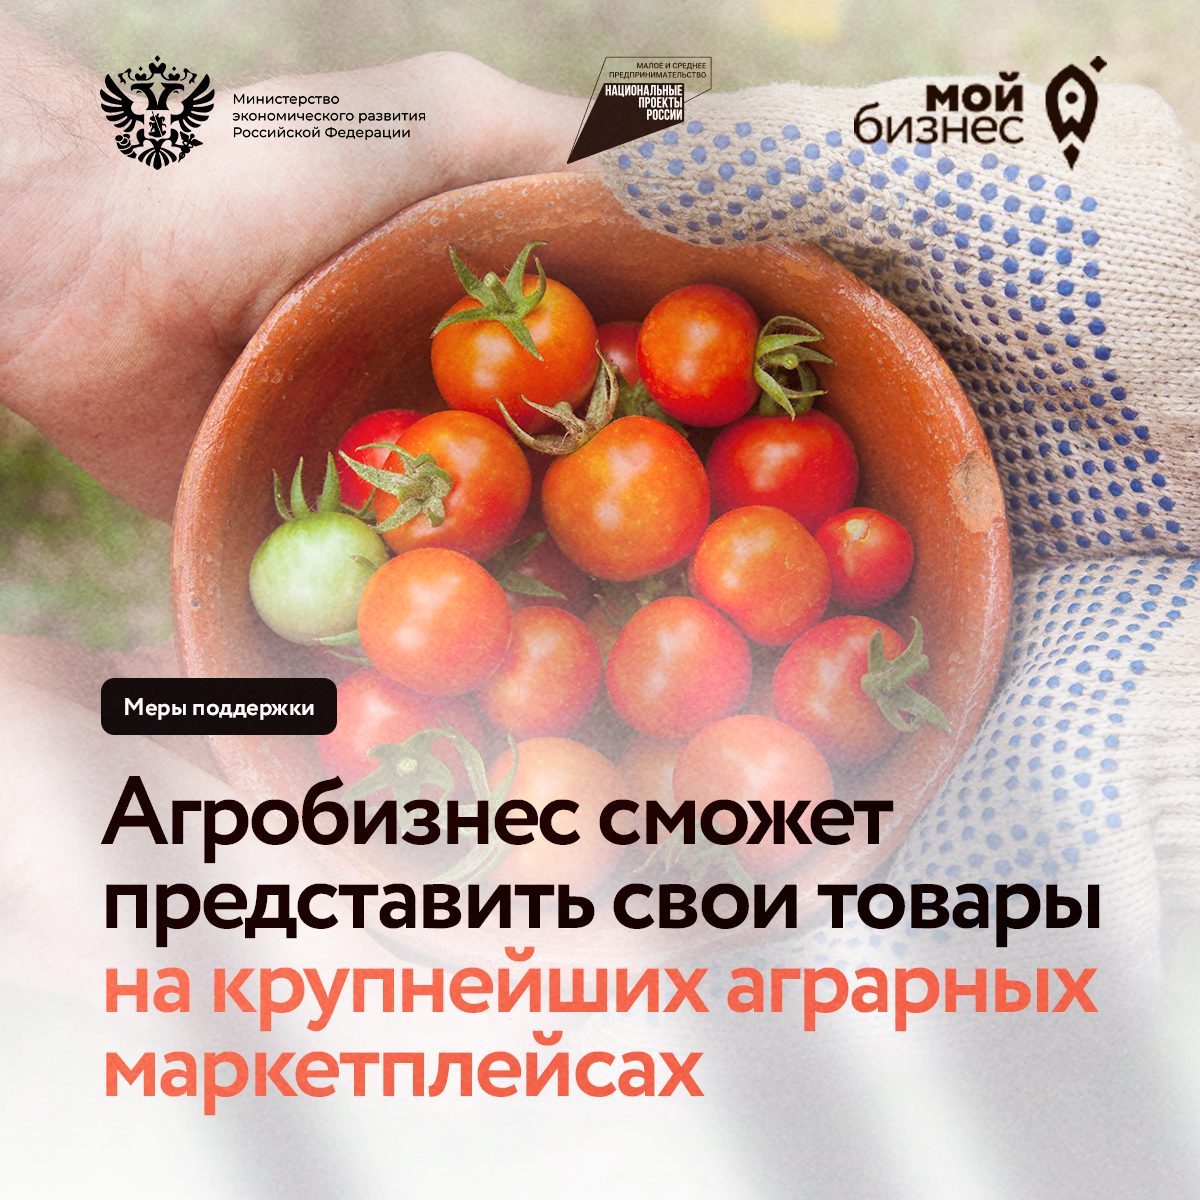 Минэкономразвития России и РСХБ запускают совместную программу поддержки агробизнеса